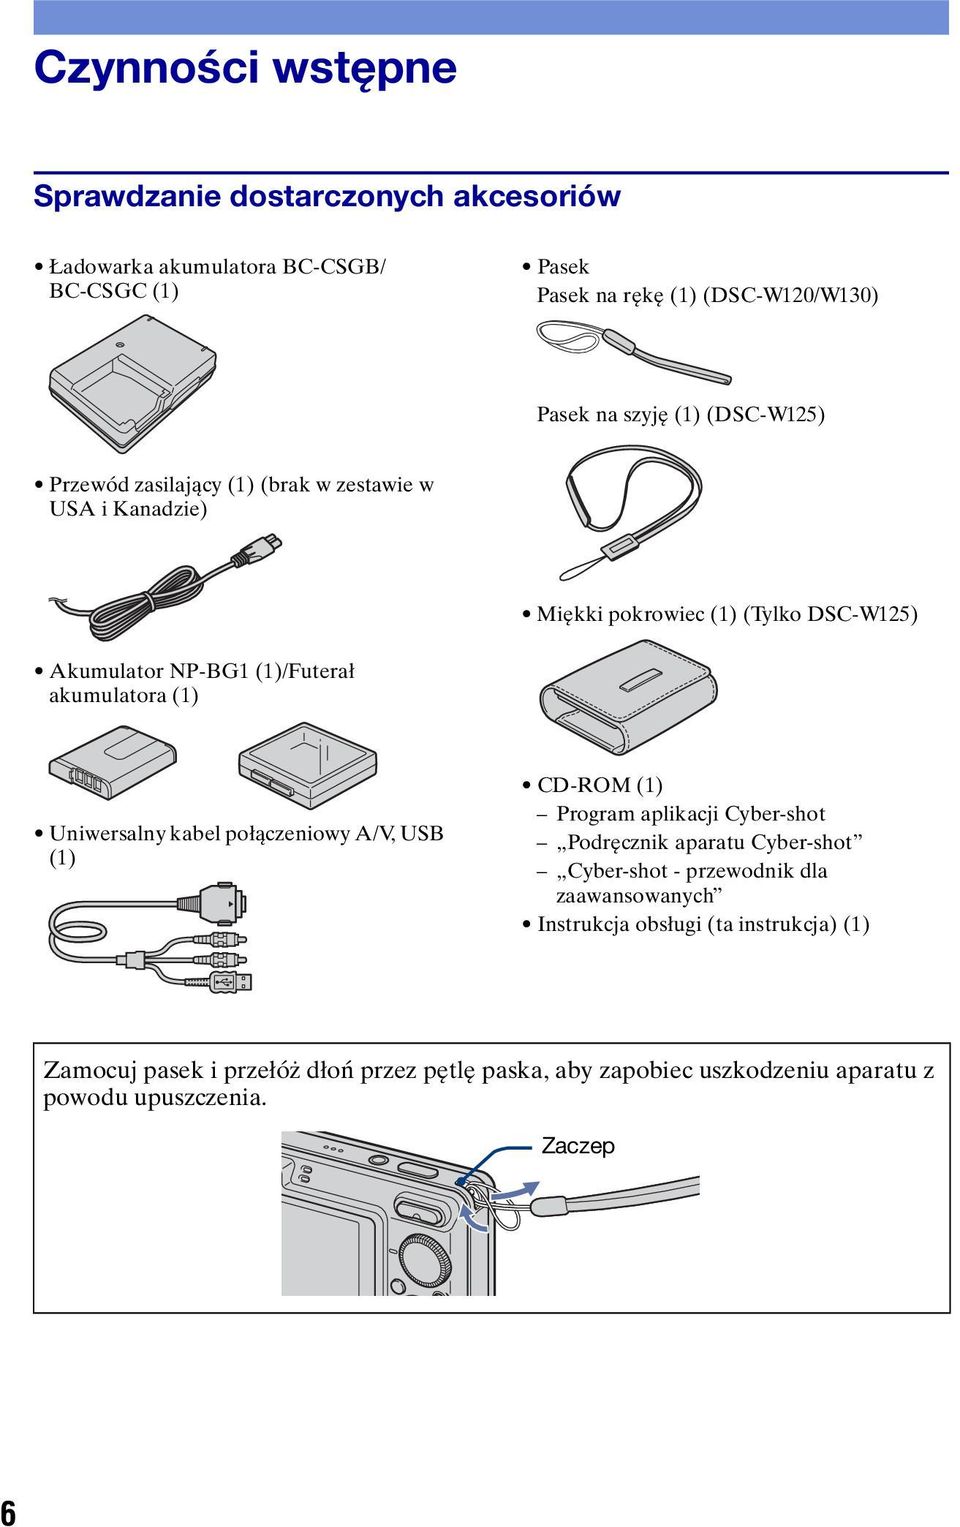 (1) Uniwersalny kabel połączeniowy A/V, USB (1) CD-ROM (1) Program aplikacji Cyber-shot Podręcznik aparatu Cyber-shot Cyber-shot - przewodnik dla